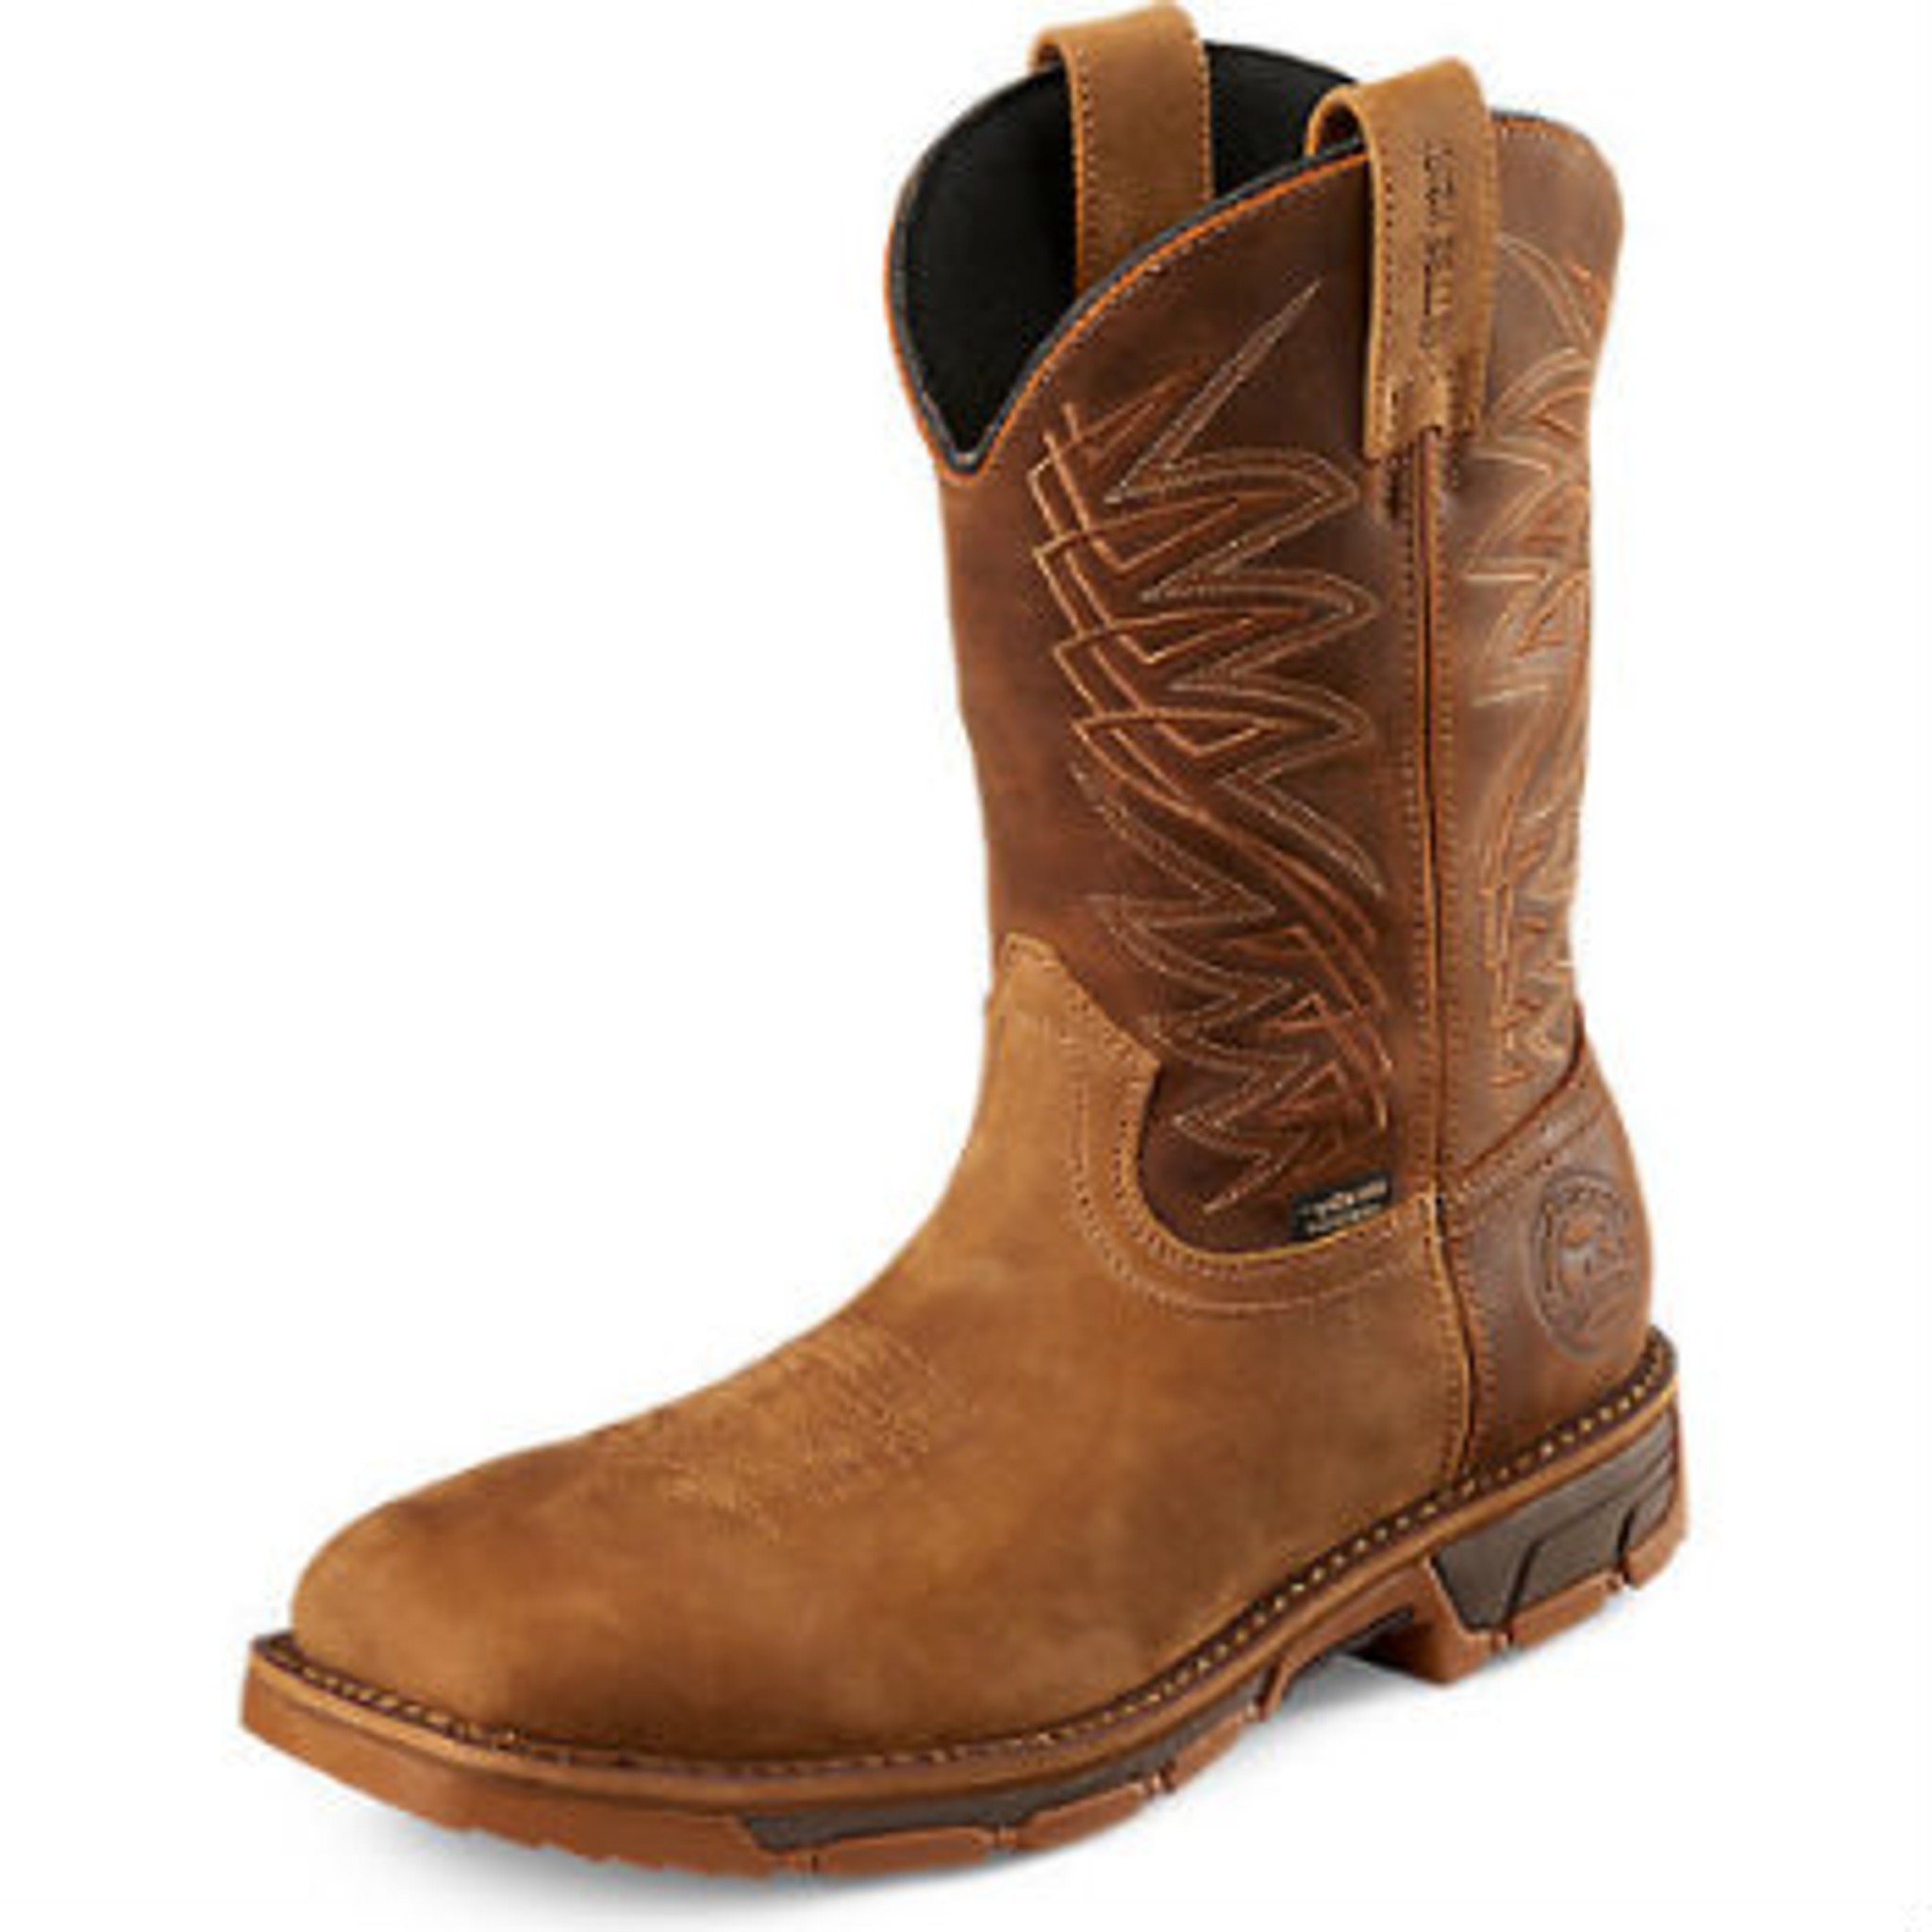 buy \u003e irish setter boots cheap, Up to 